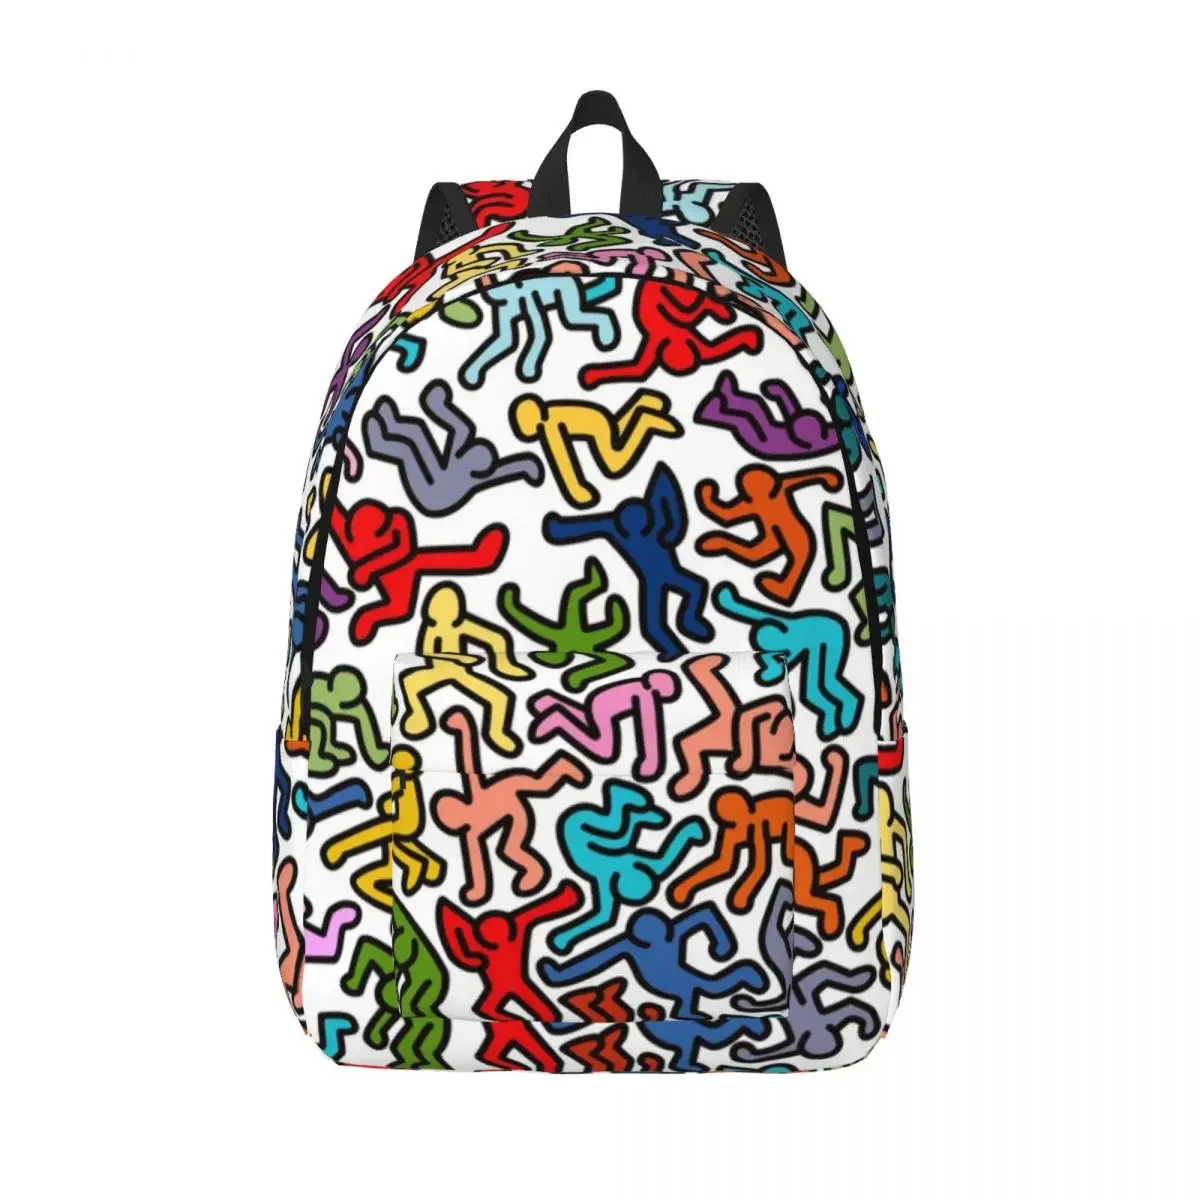 

Холщовый Рюкзак Haring для мужчин и женщин, цветной ранец с геометрическим рисунком, падающий, с рисунком граффити, абстрактный поп-арт, школьный дорожный портфель для колледжа